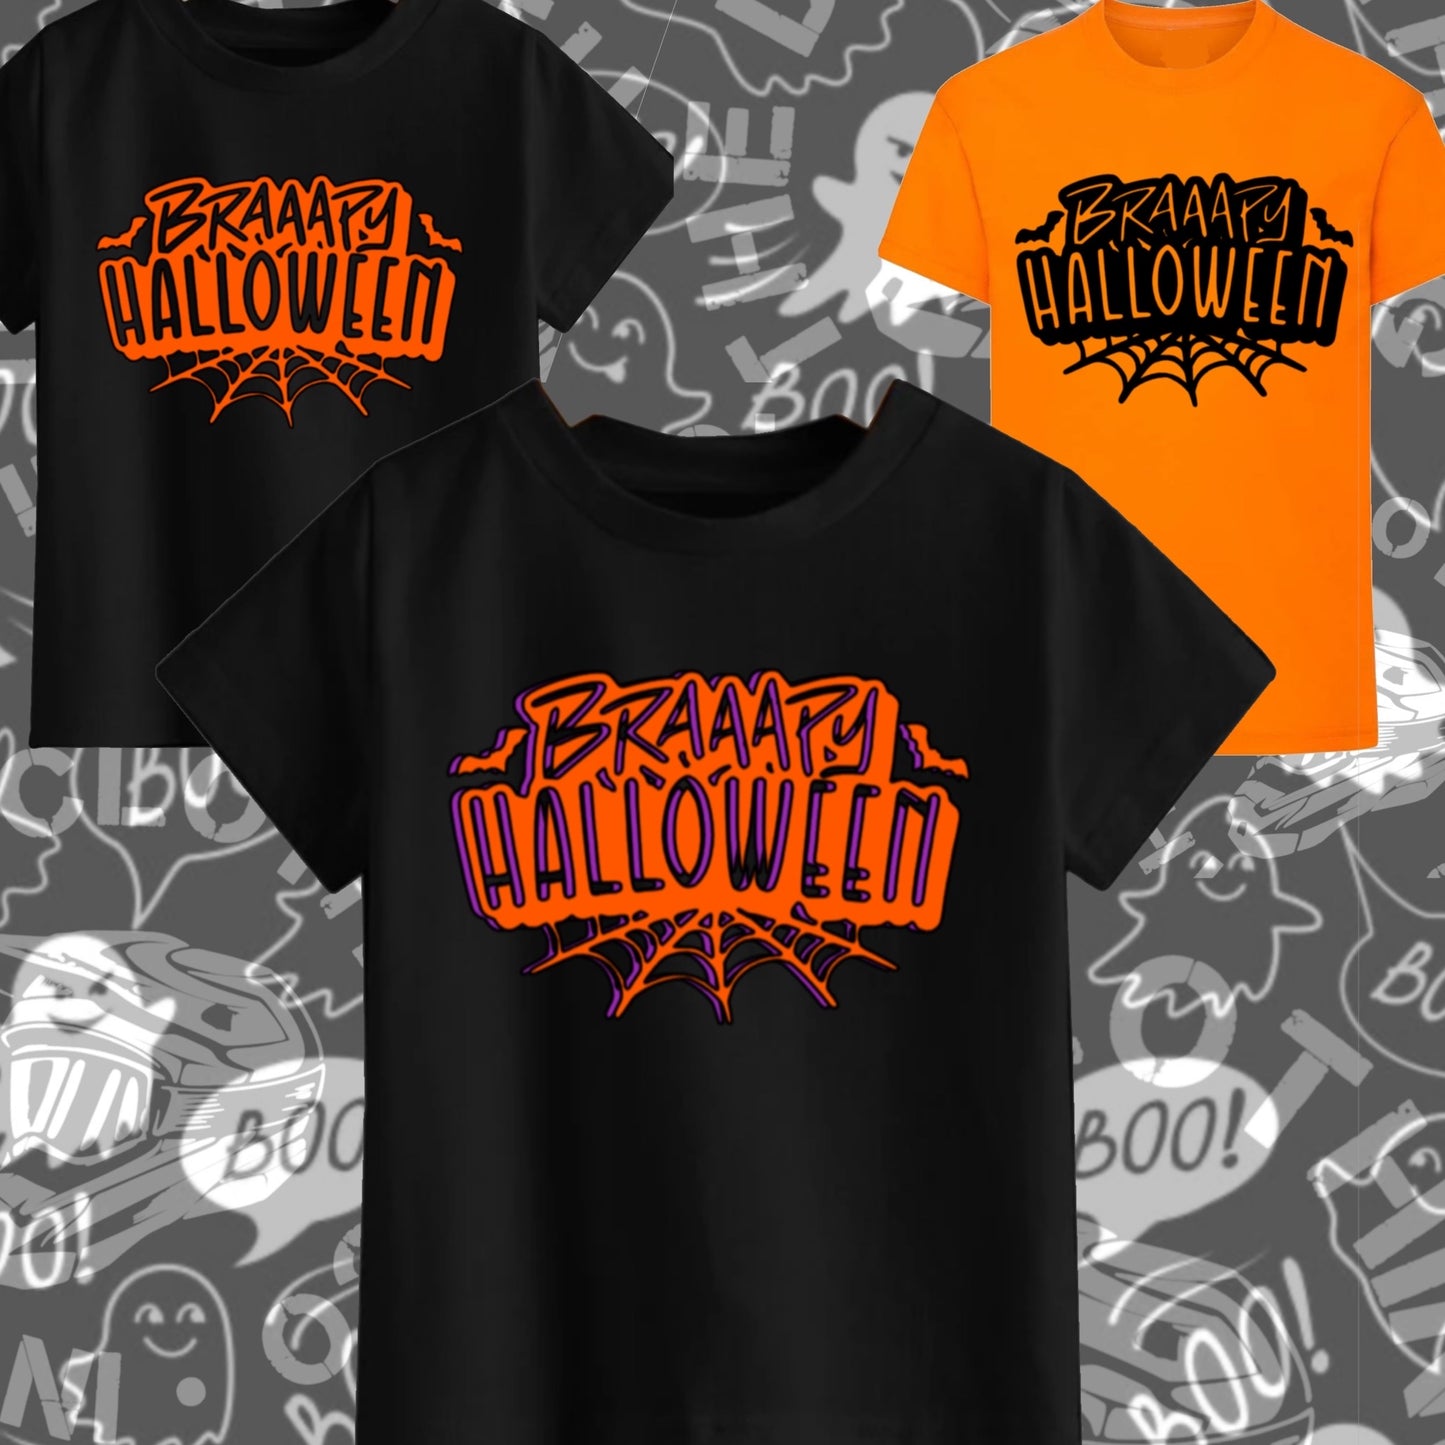 Braaapy Halloween T-shirt